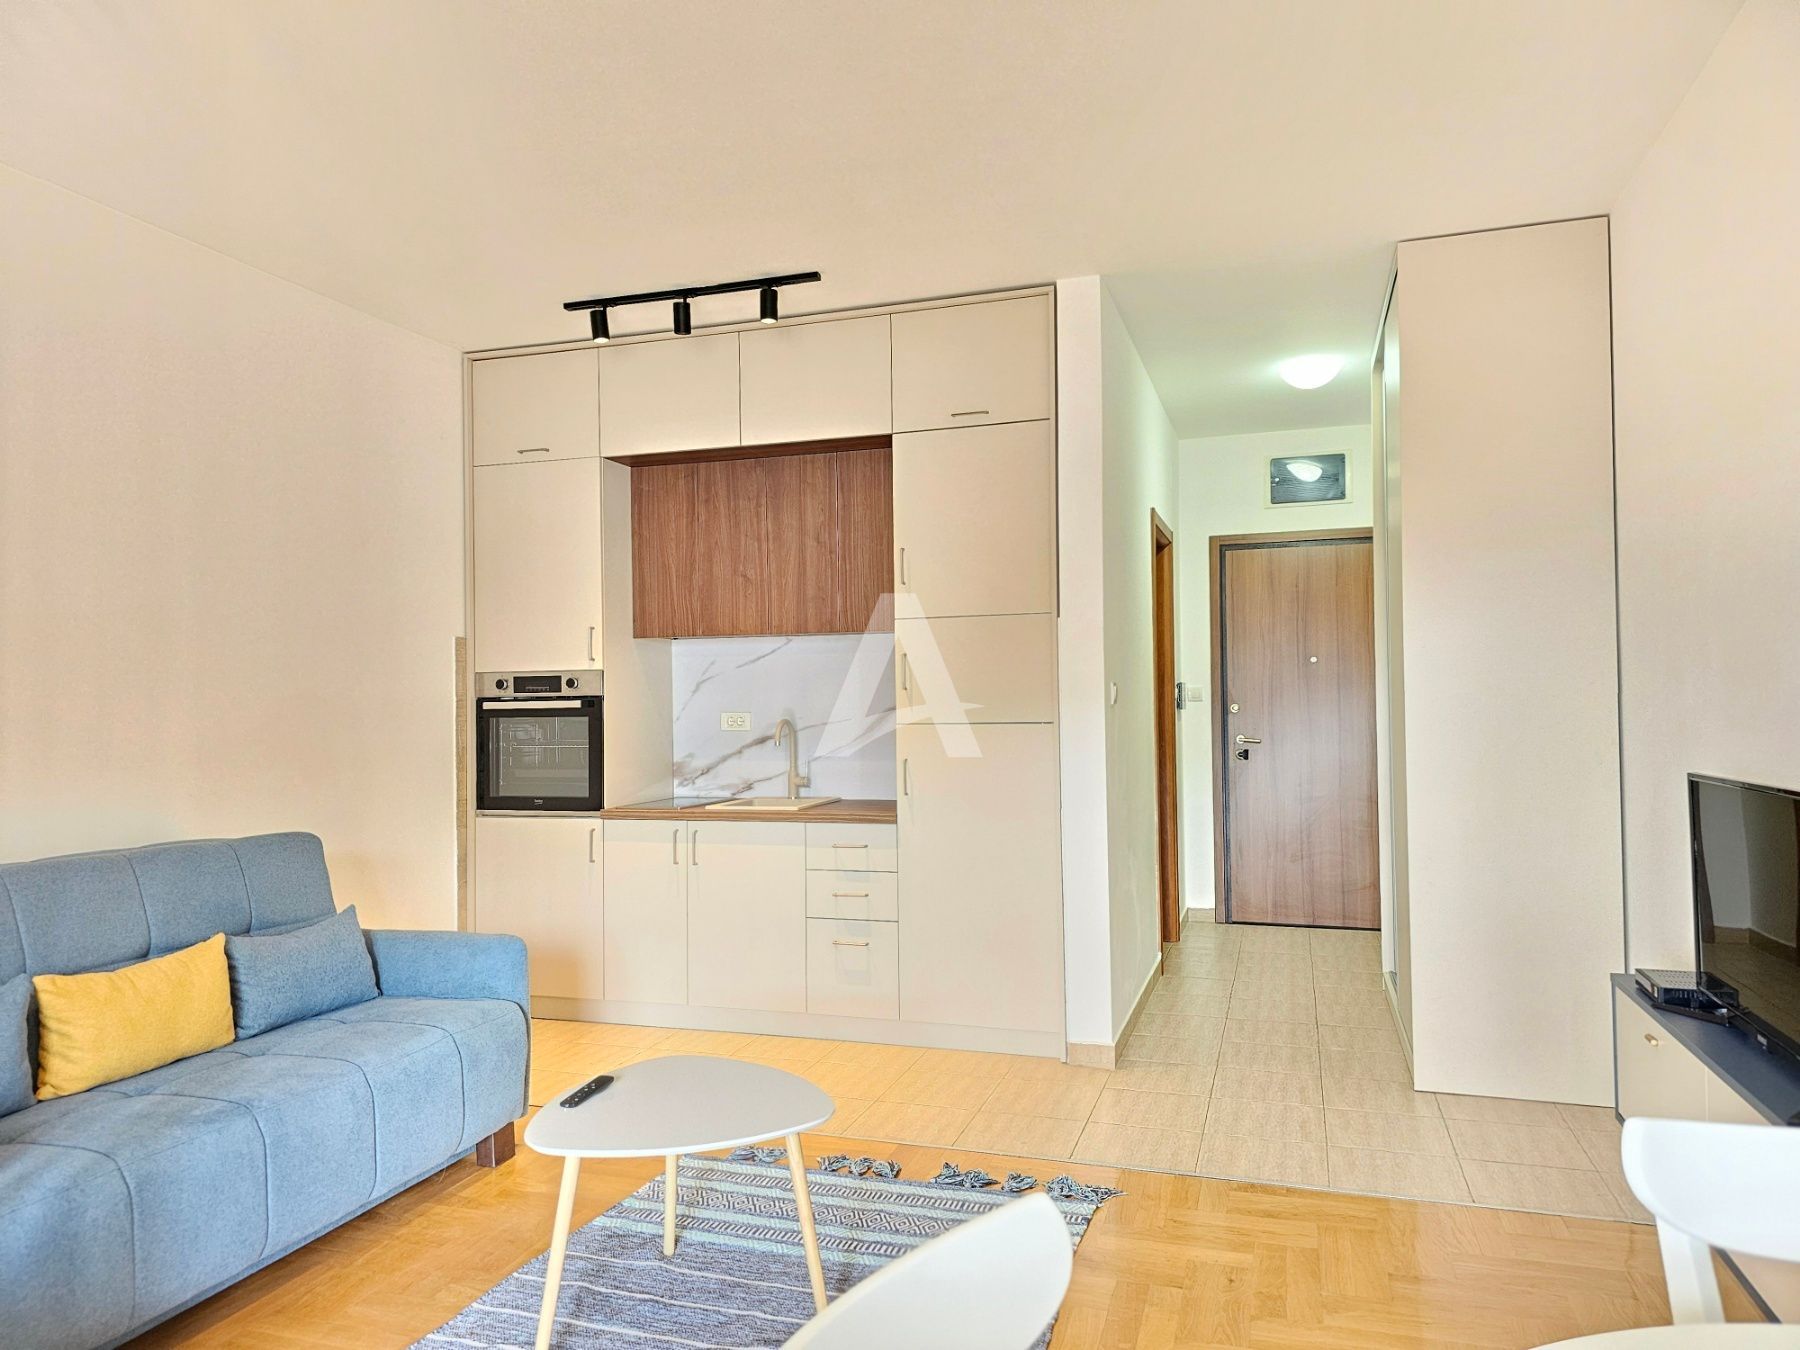 amforaproperty.com/Moderno opremljen studio apartman sa pogledom na more,Becici (na duzi period,dostupan od 01.09)